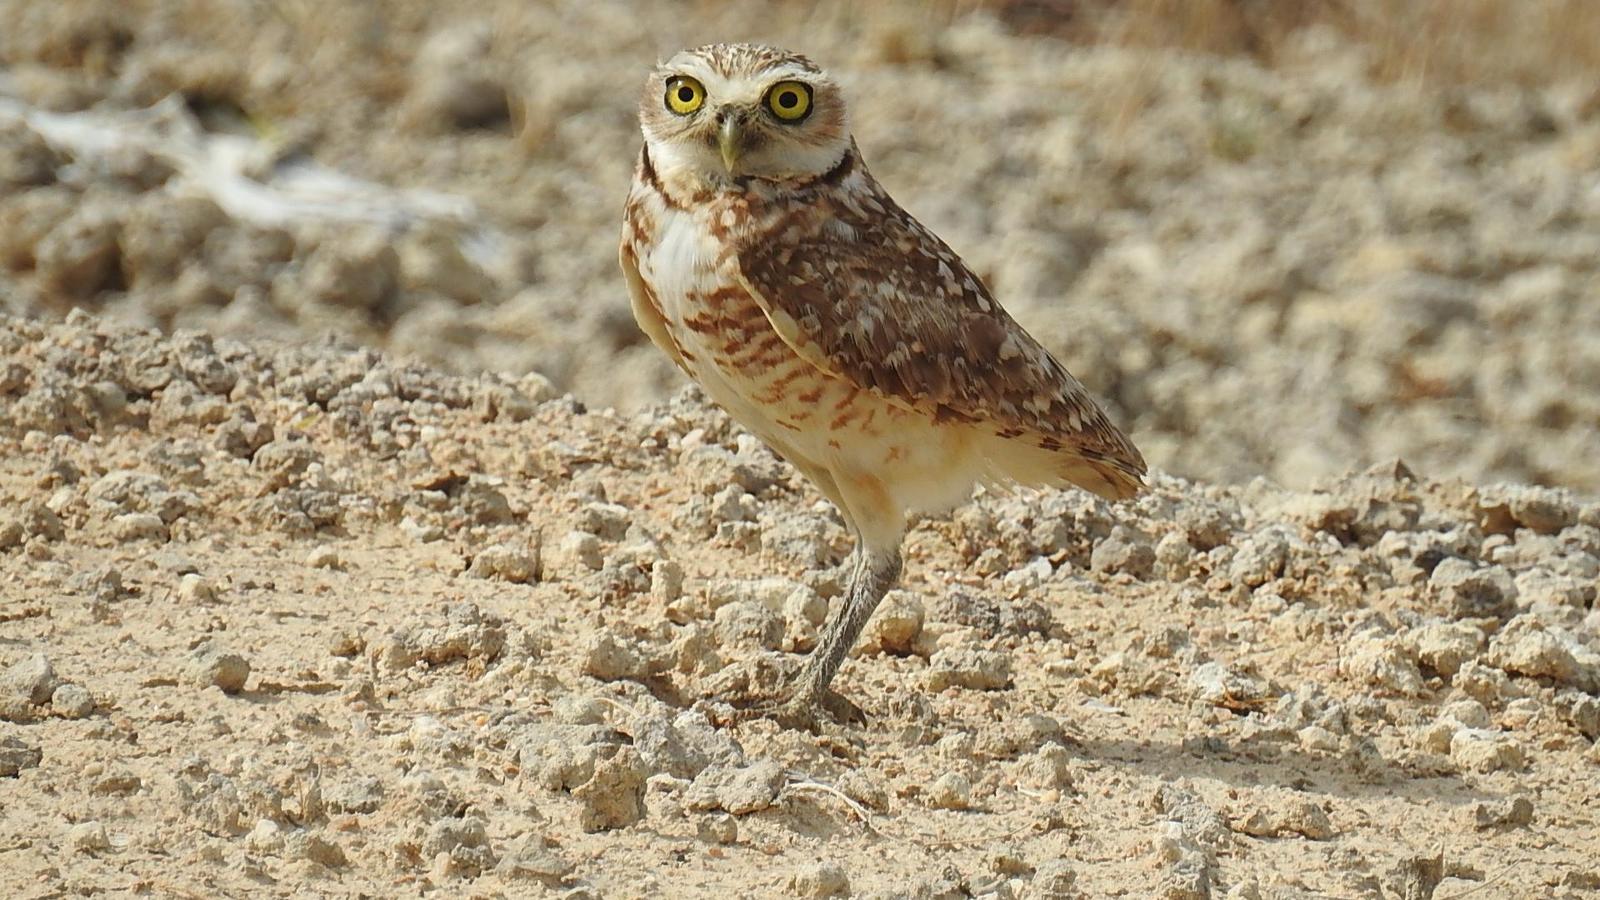 Burrowing Owl Photo by Julio Delgado